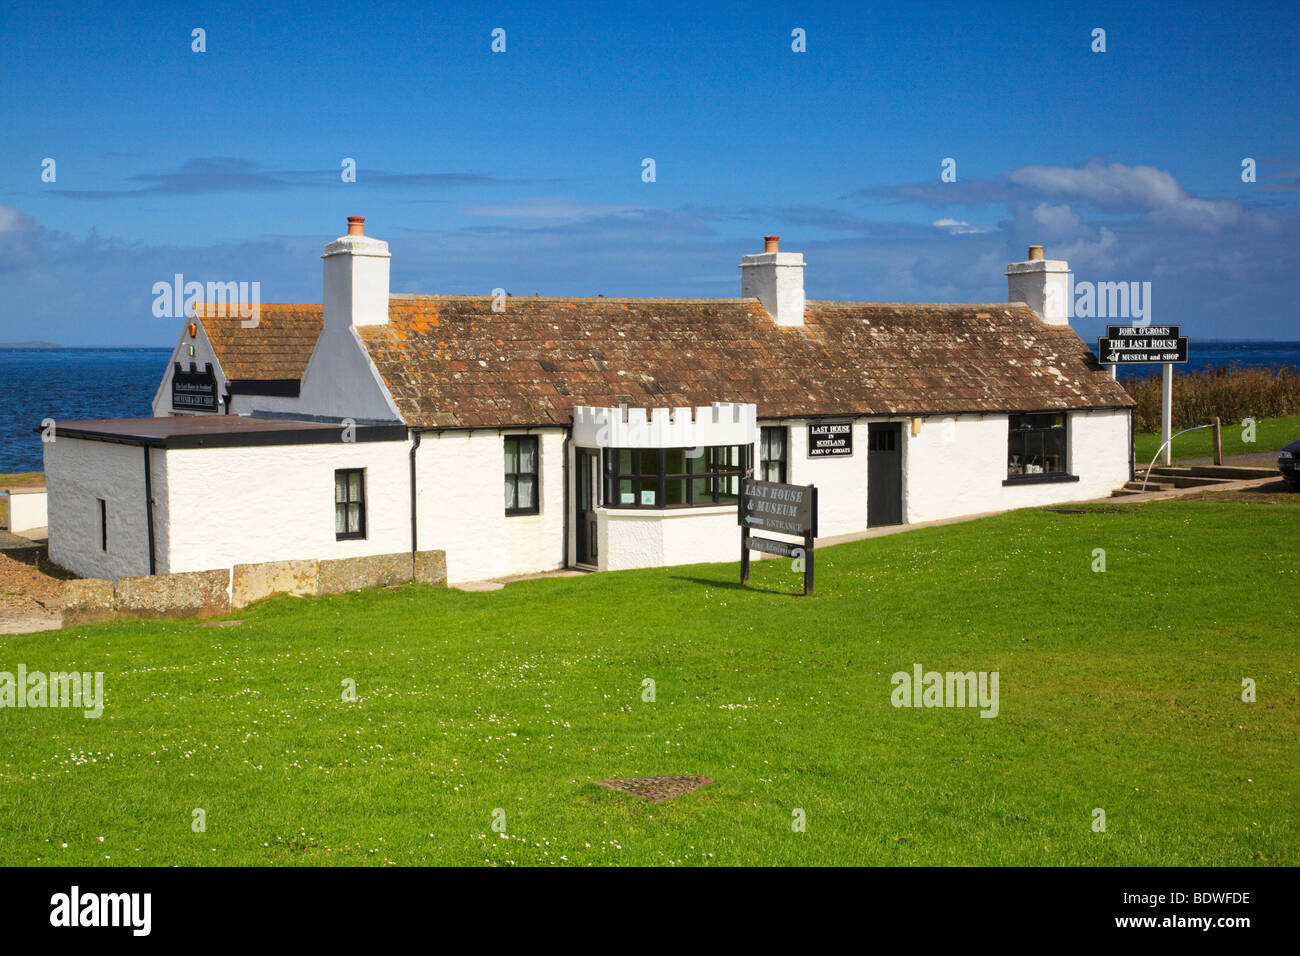 the 'Last House' at John o'Groats. Scotland. Stock Photo